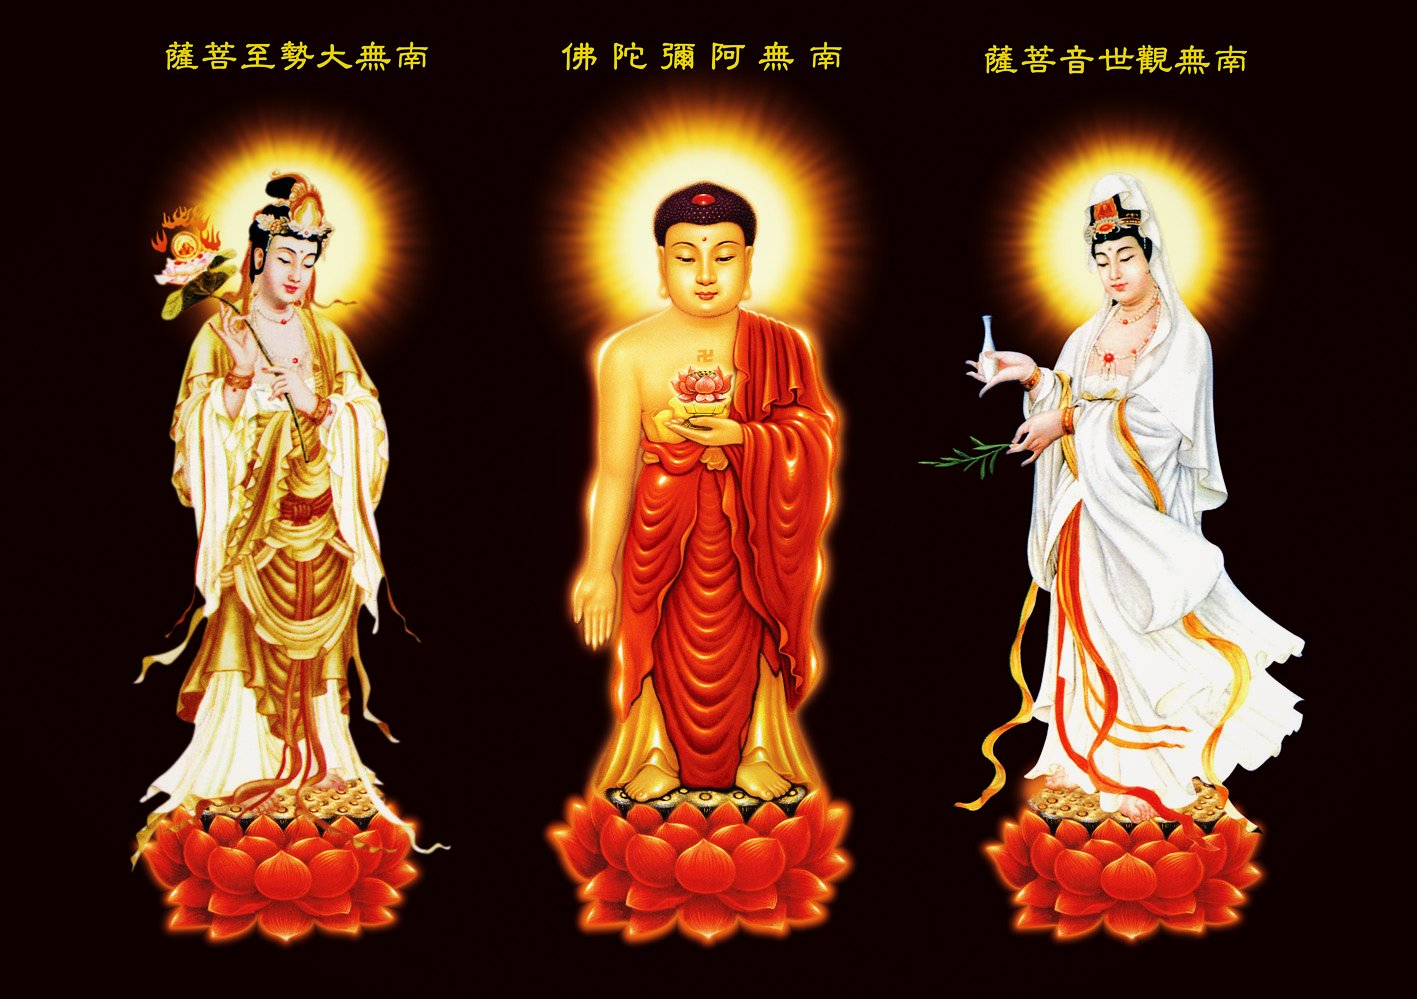 多張大張阿彌陀佛和西方三聖像